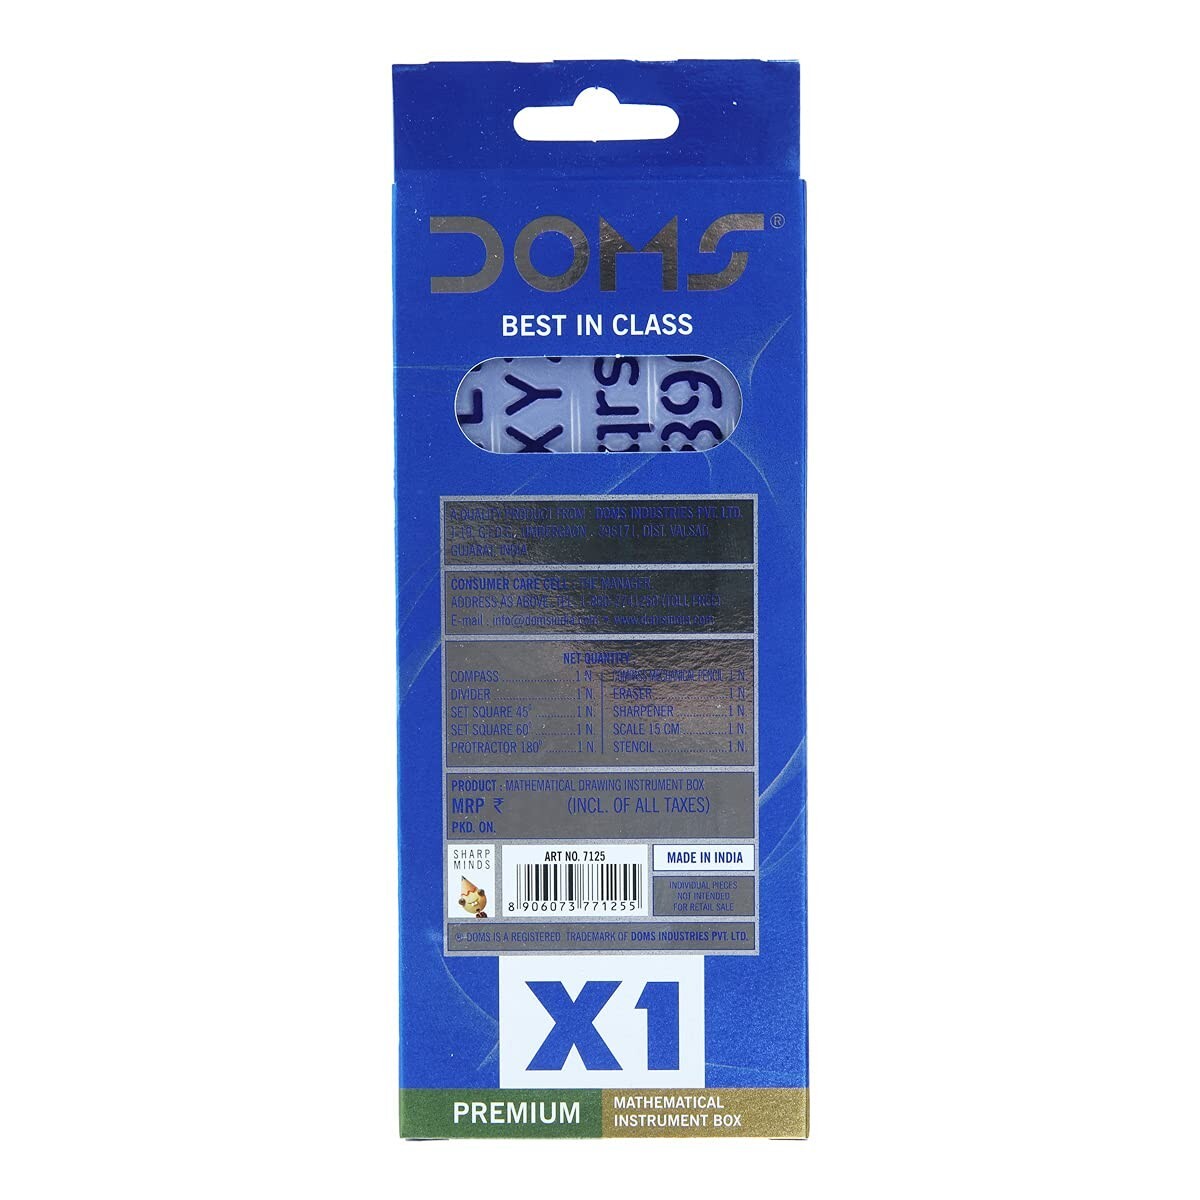 Doms X1 Premium Mathematical Instrument Box 7125